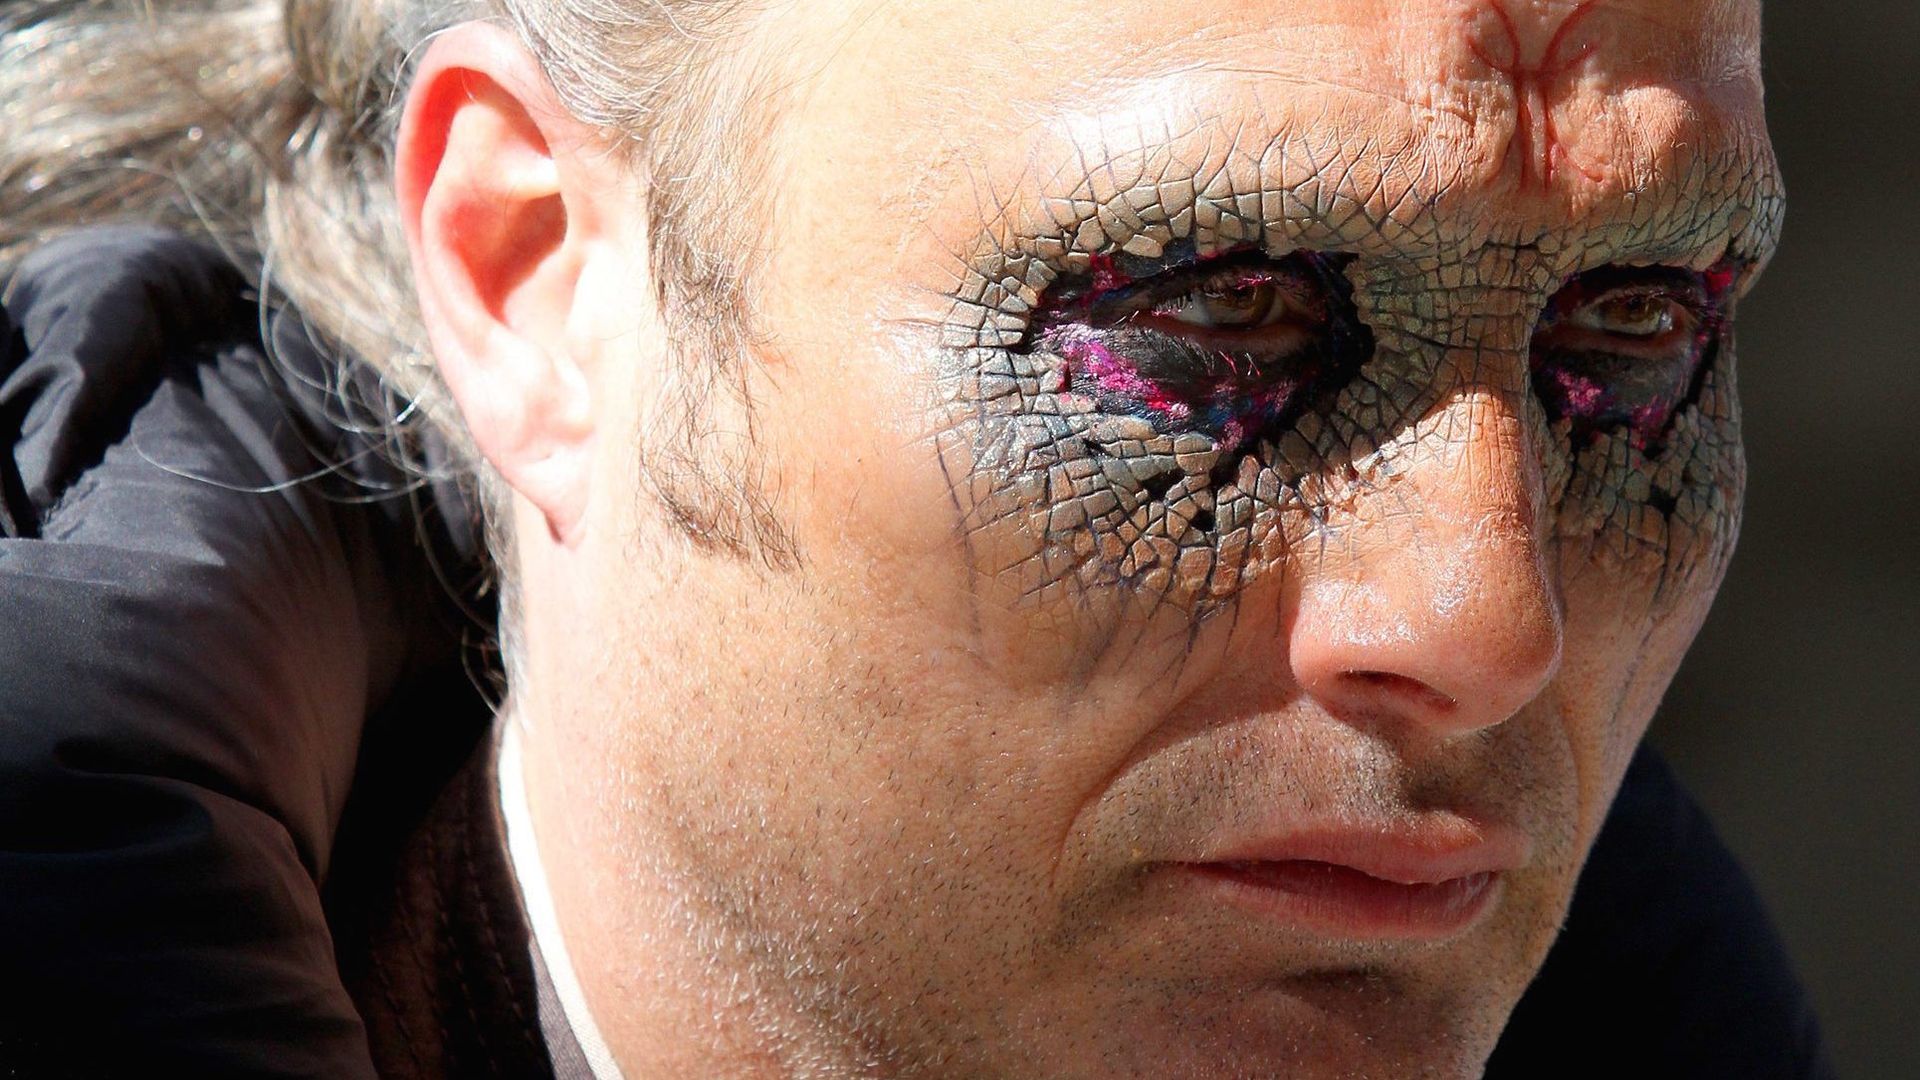 Doctor Strange: Mads Mikkelsen with Makeup